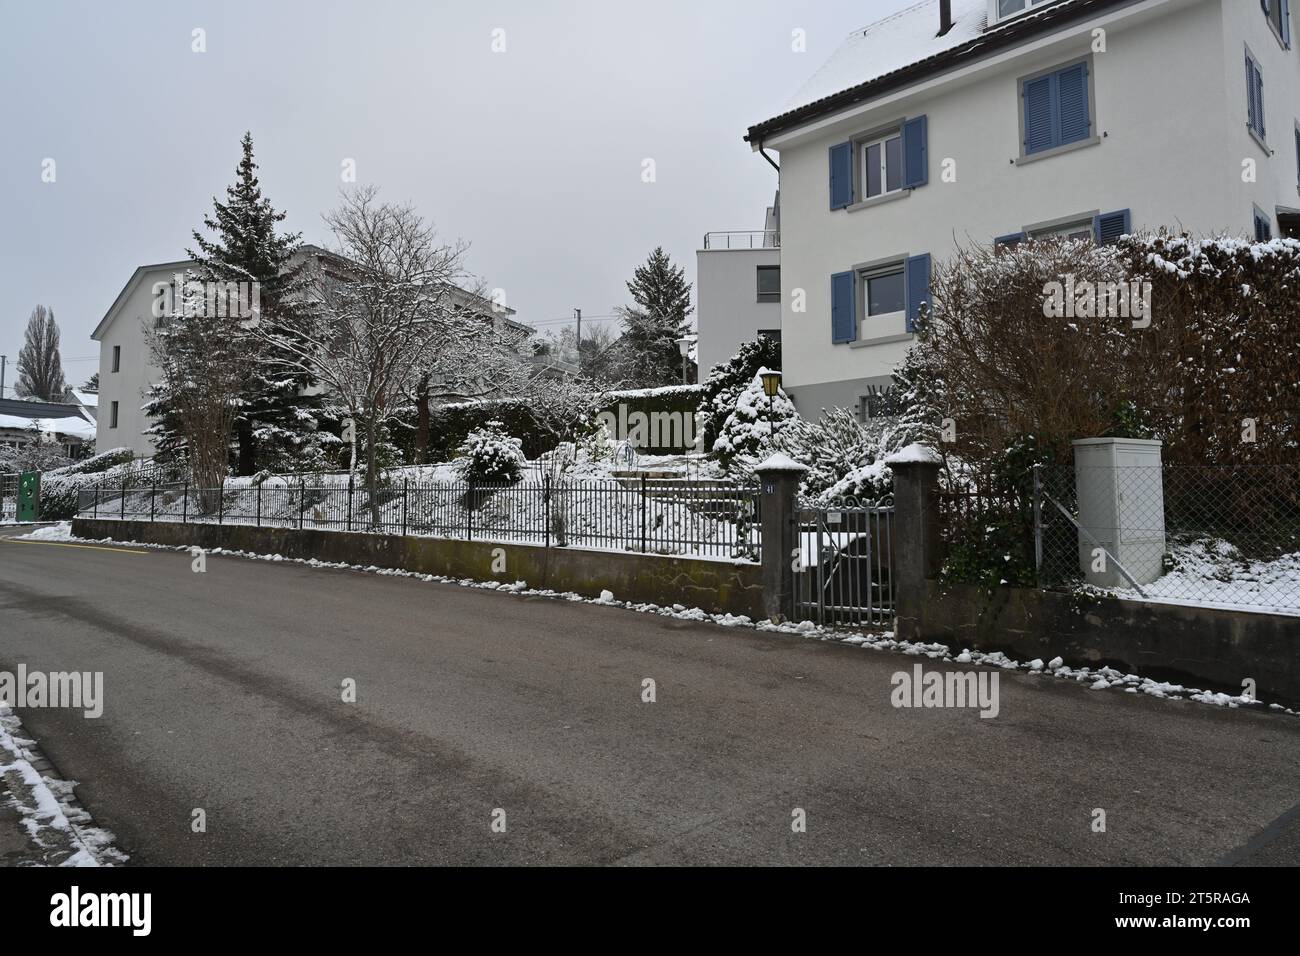 Strada nel quartiere residenziale del villaggio Urdorf in Svizzera in inverno. C'è un sottile strato di neve, specialmente su tre. Foto Stock